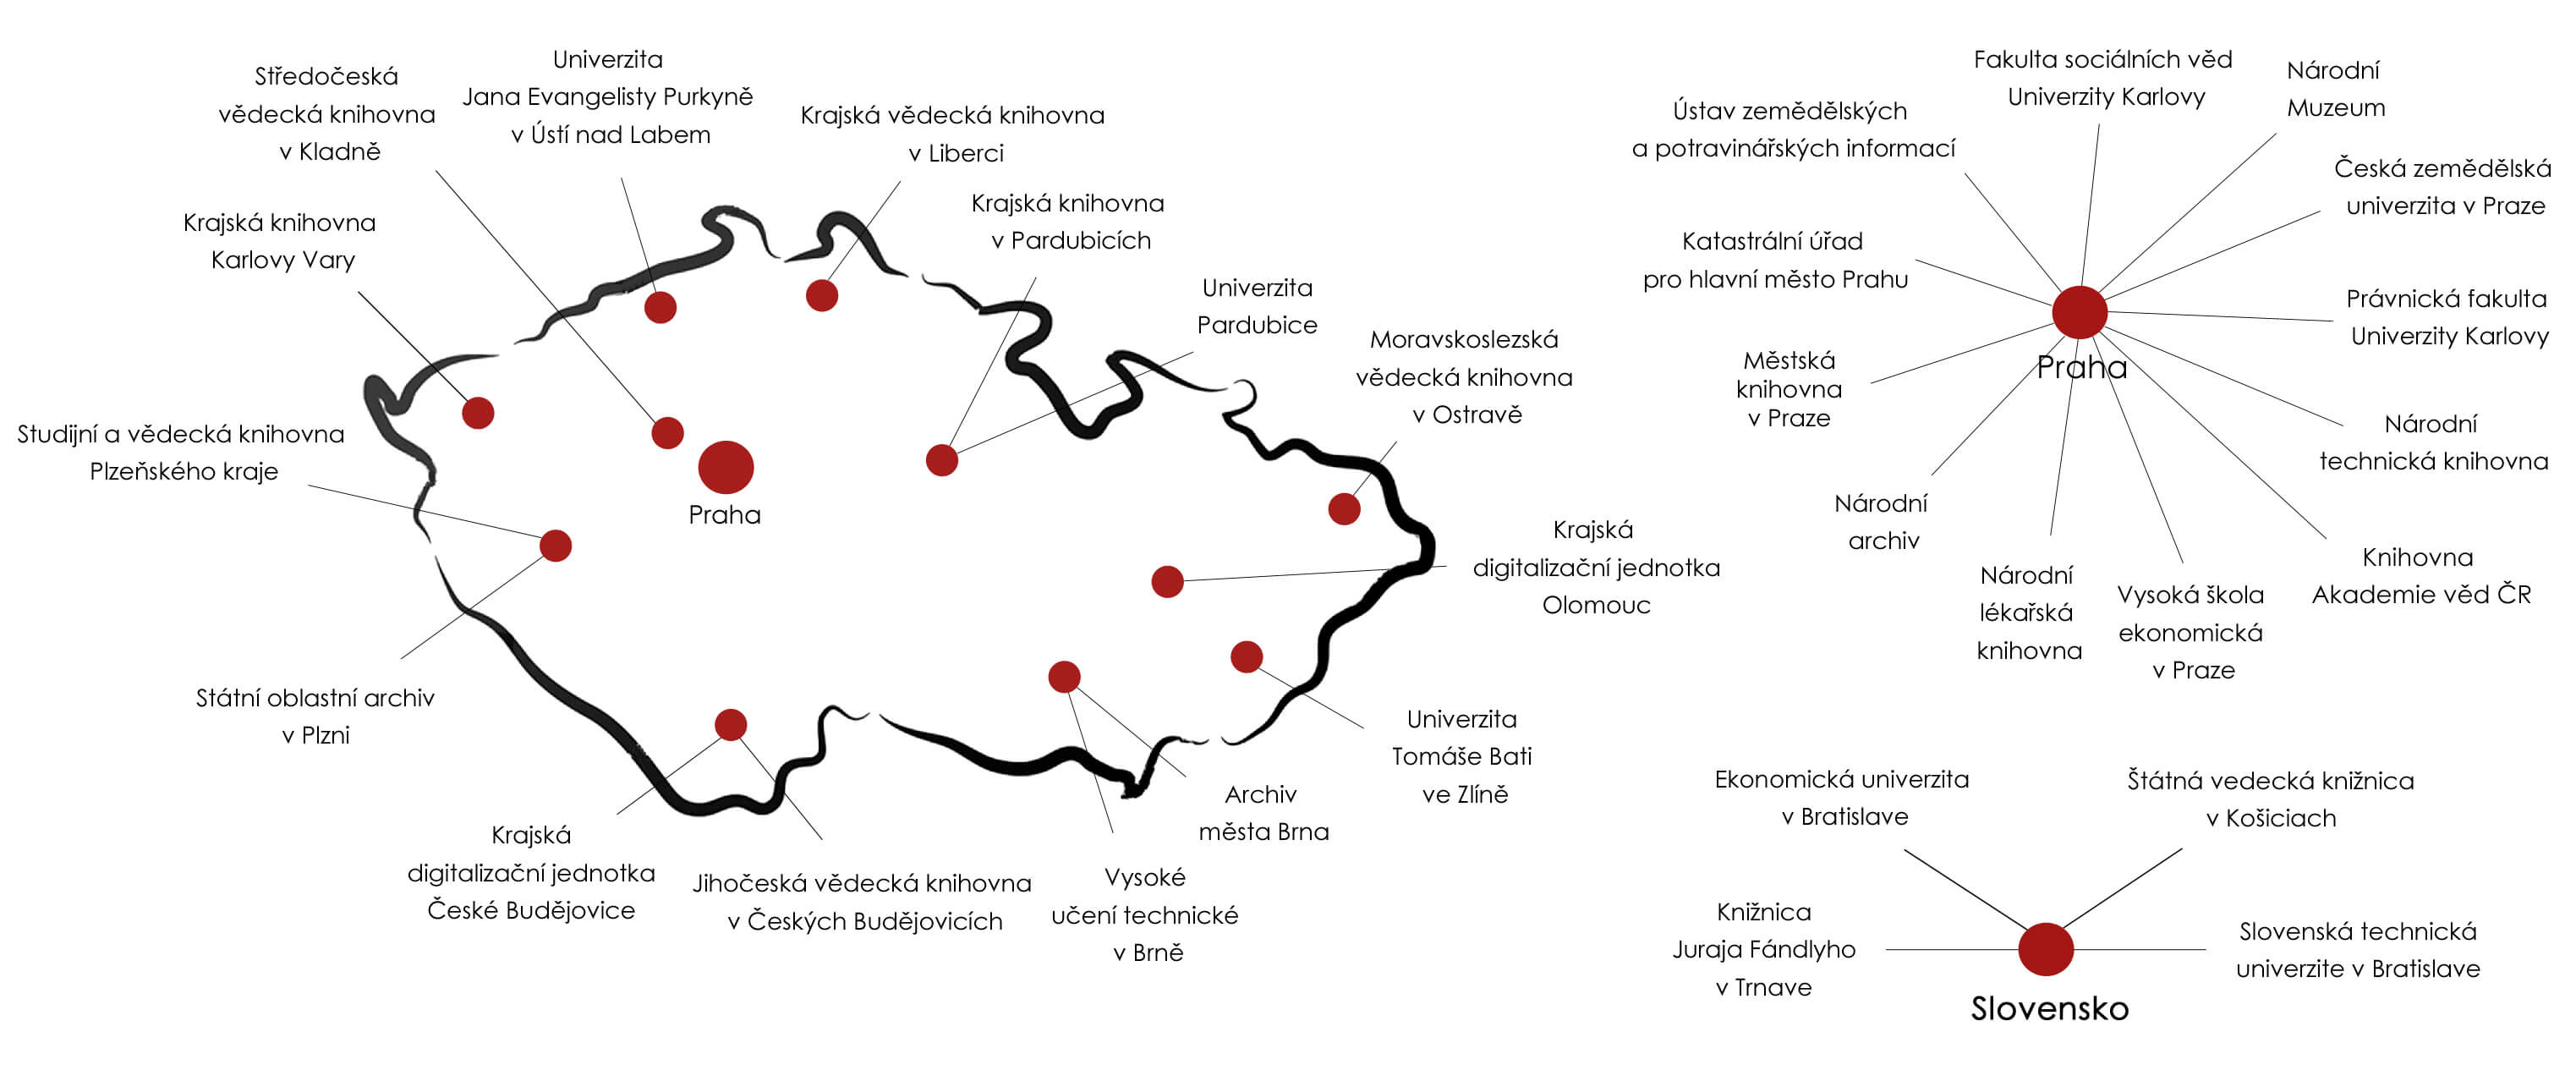 Mapa instalací knižních skenerů i2S v České republice a na Slovensku